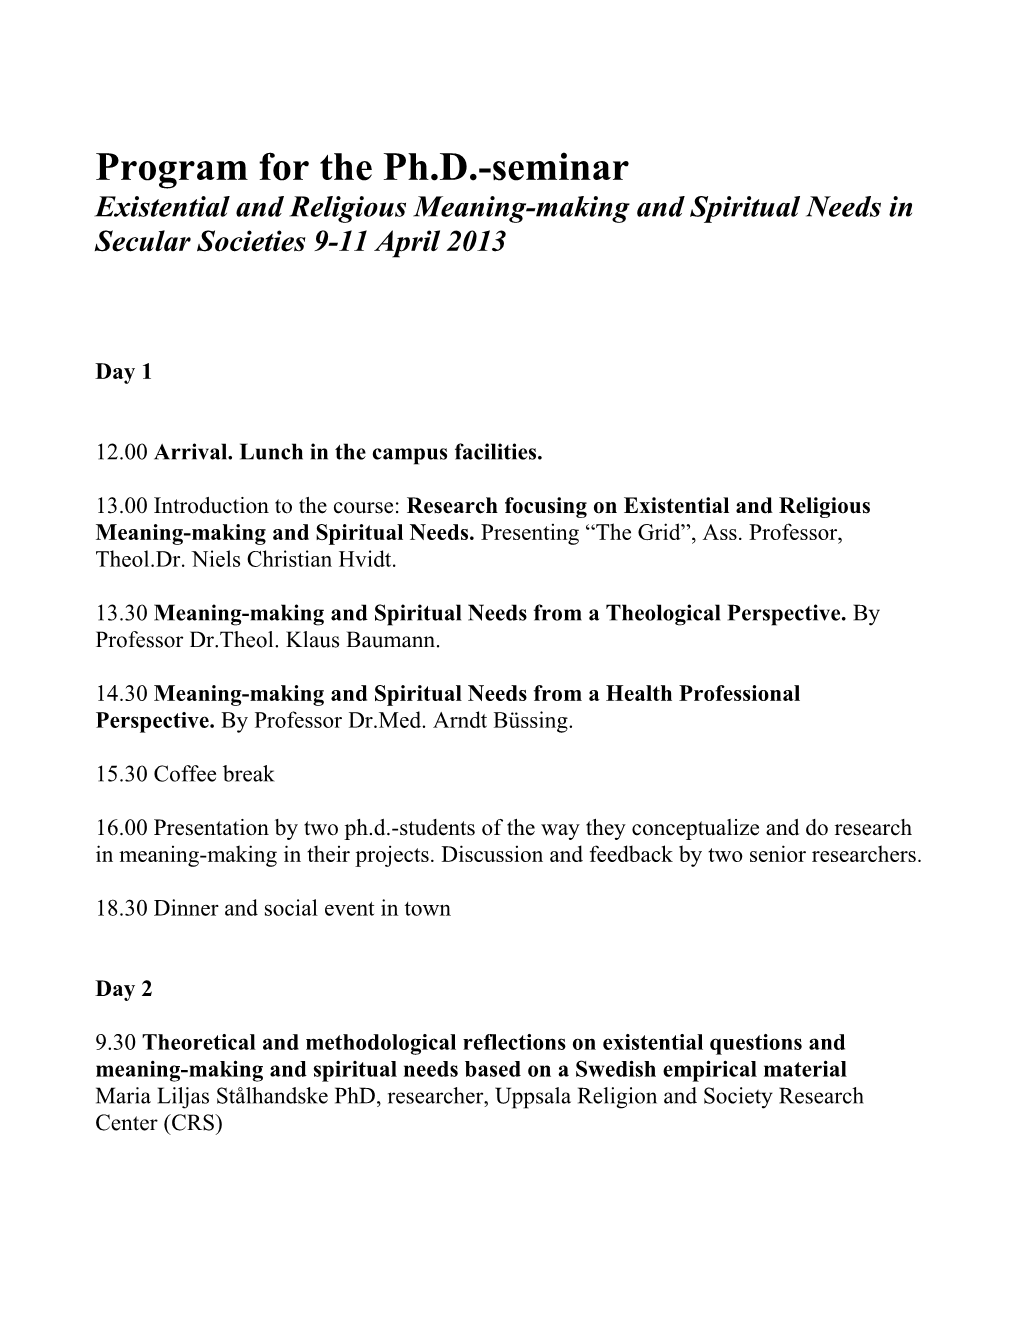 Program for the Ph.D.-Seminar